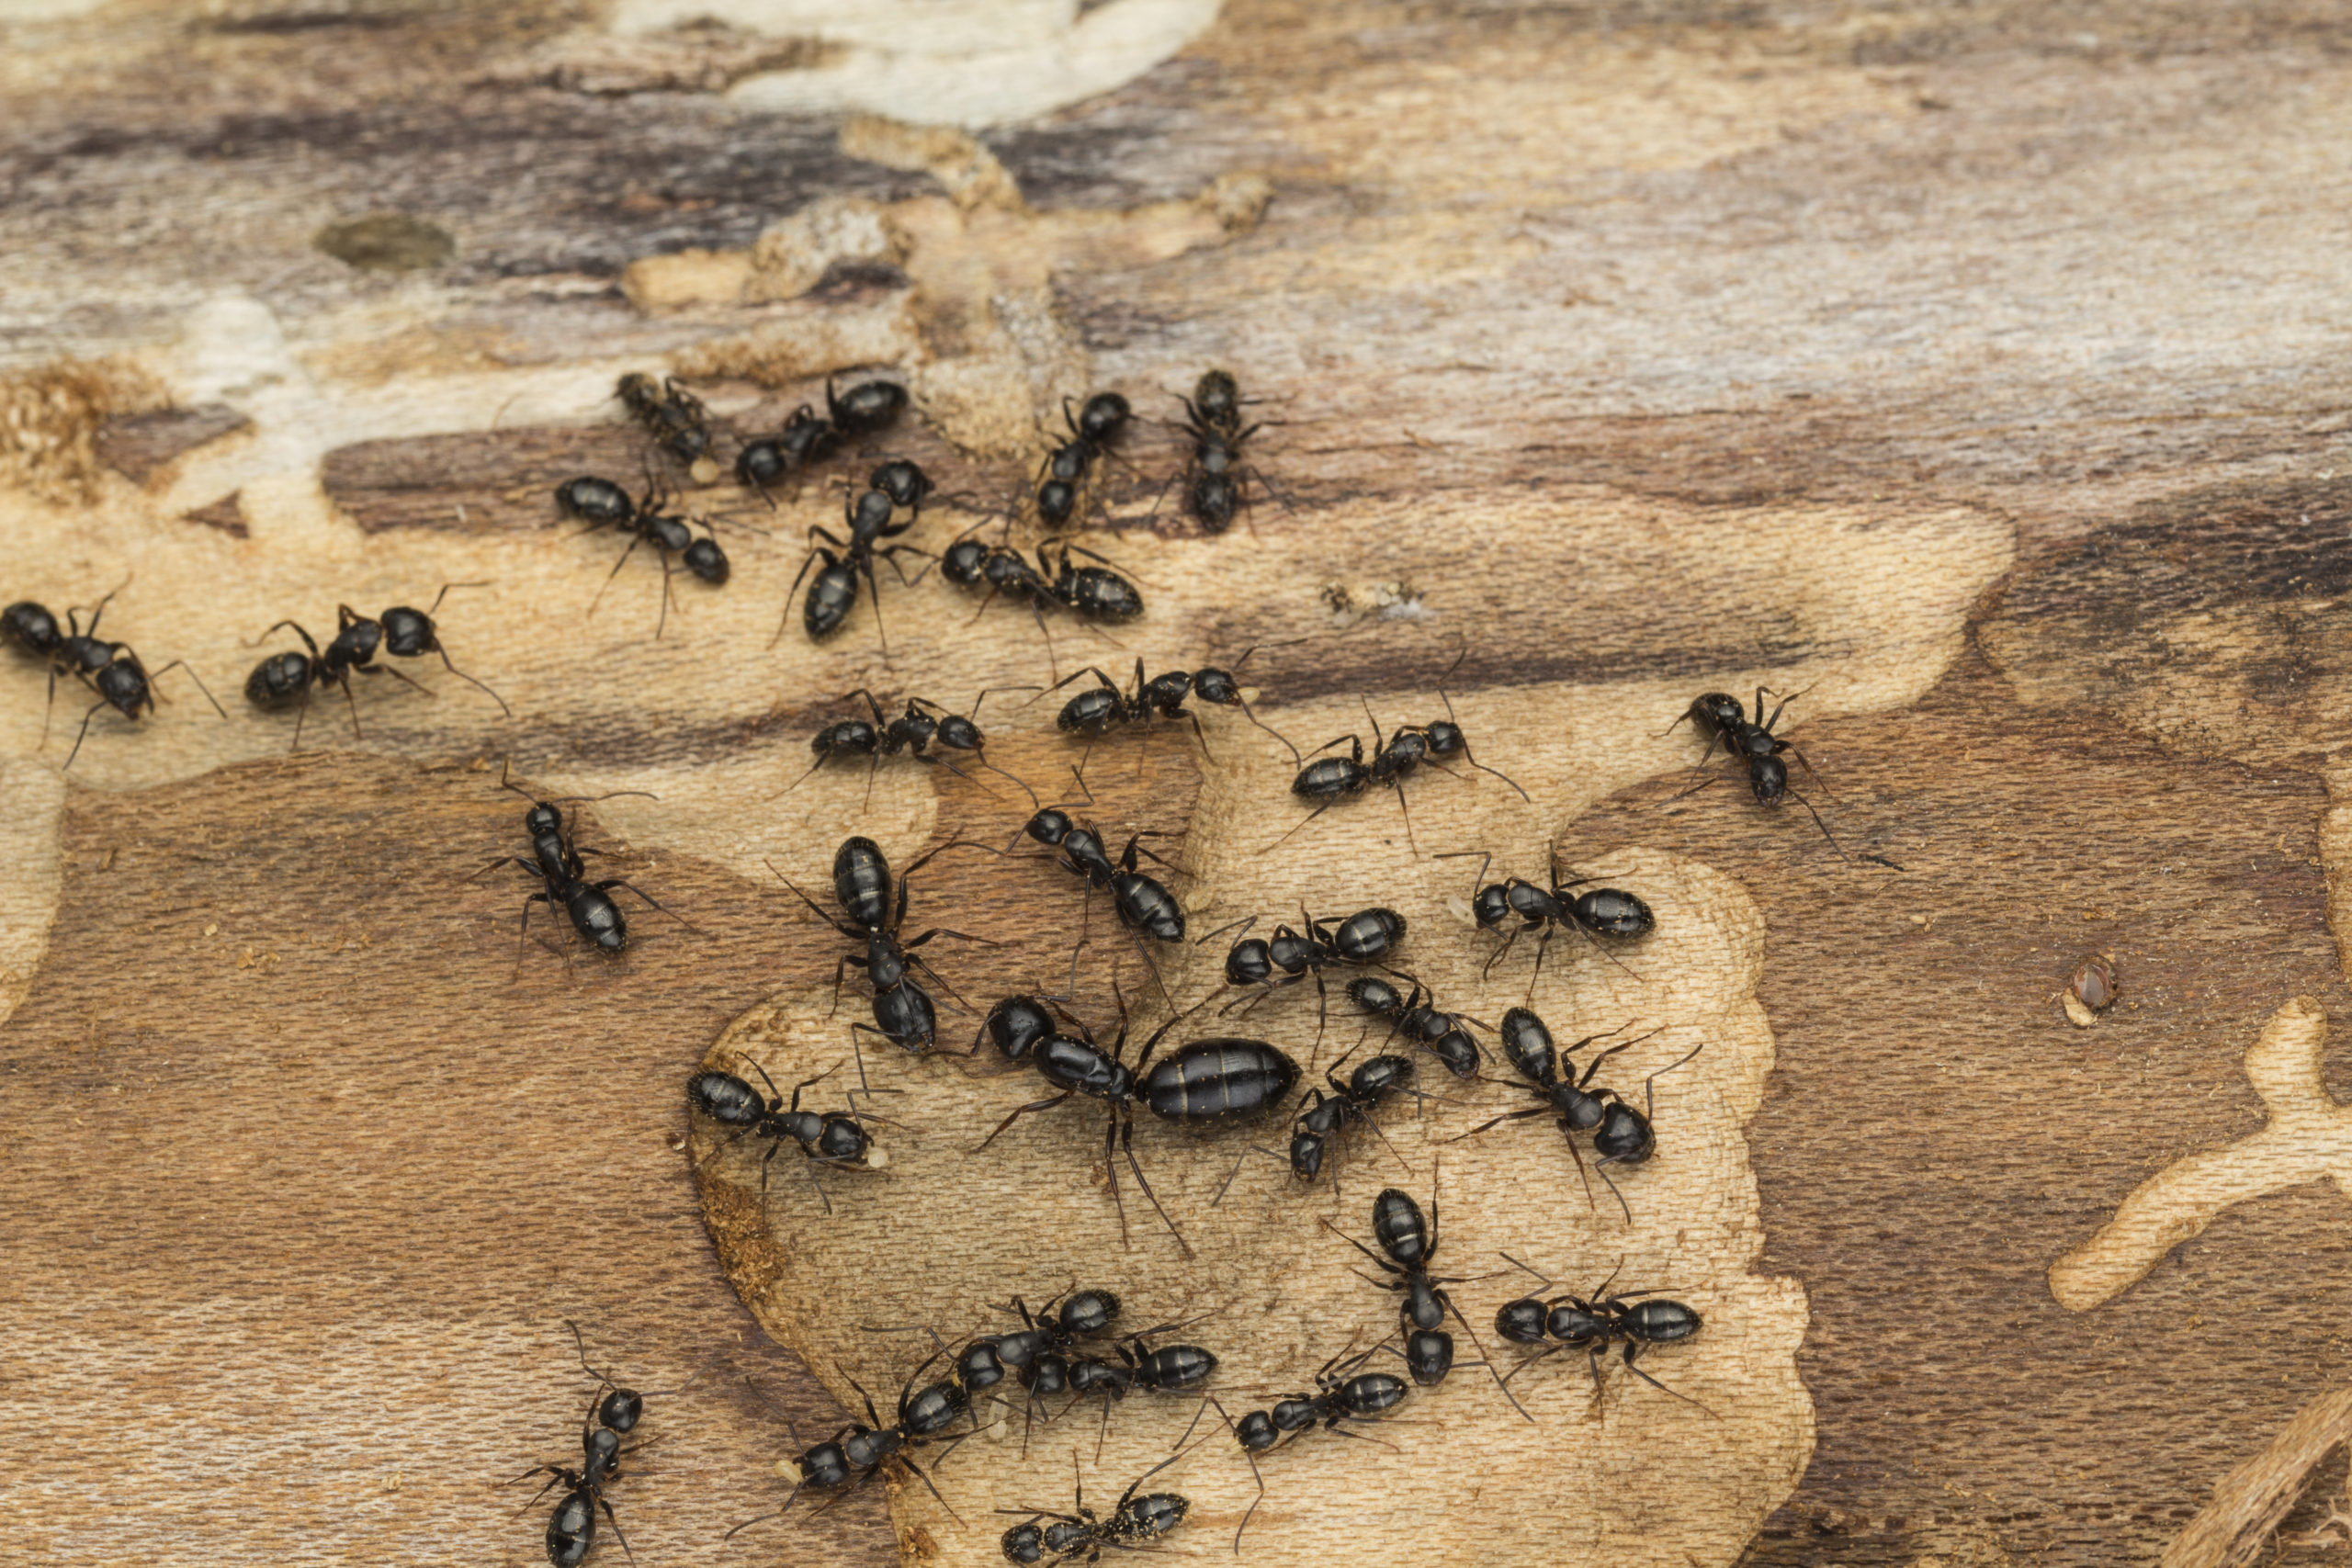 carpnetar-ants-scaled.jpg